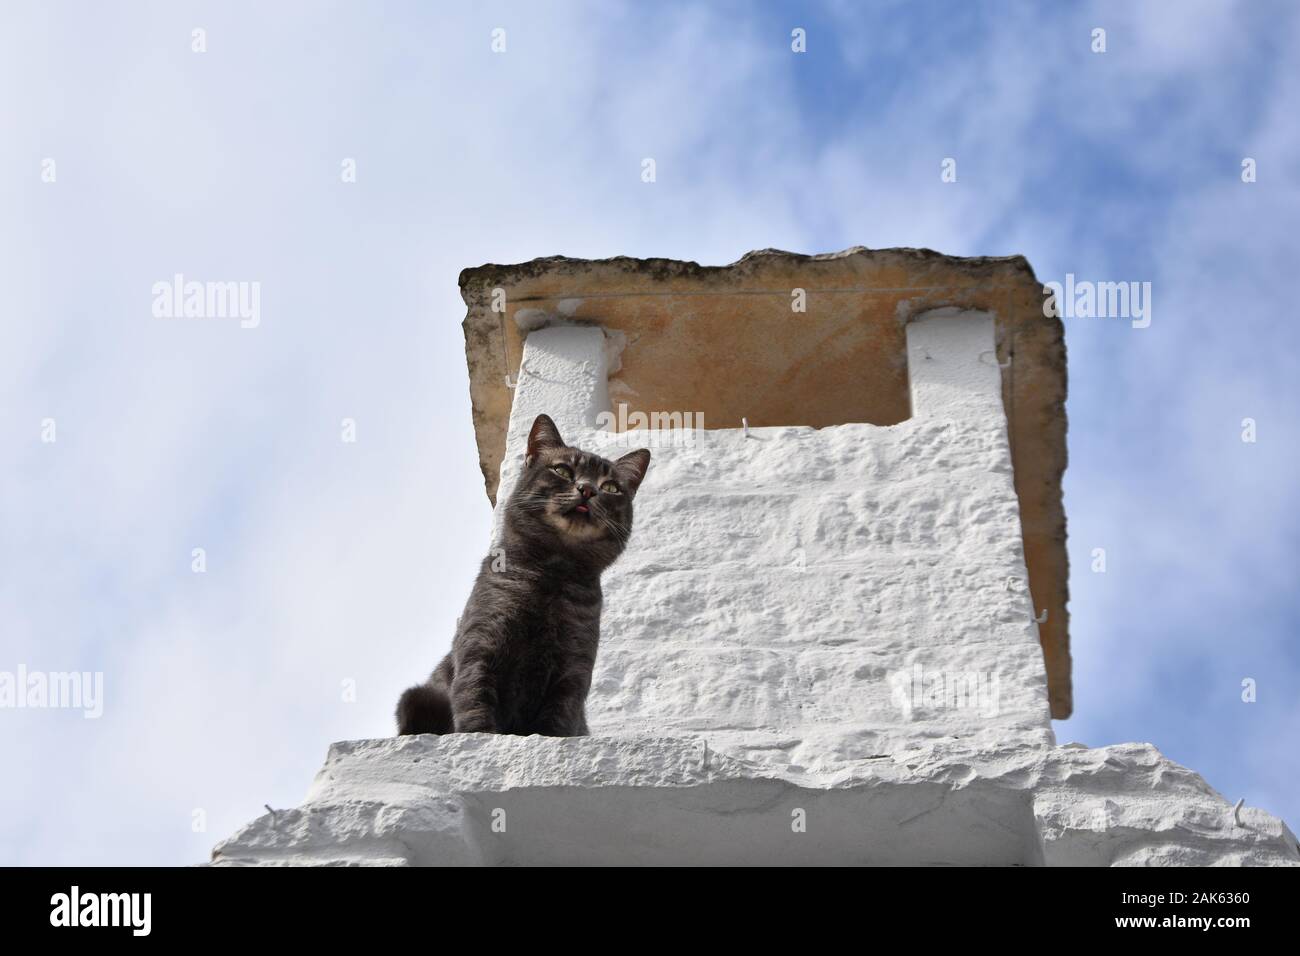 Gatto scuro con camino bianco - tetto in pietra di un trulli - simbolo della città di Alberobello, Italia Foto Stock